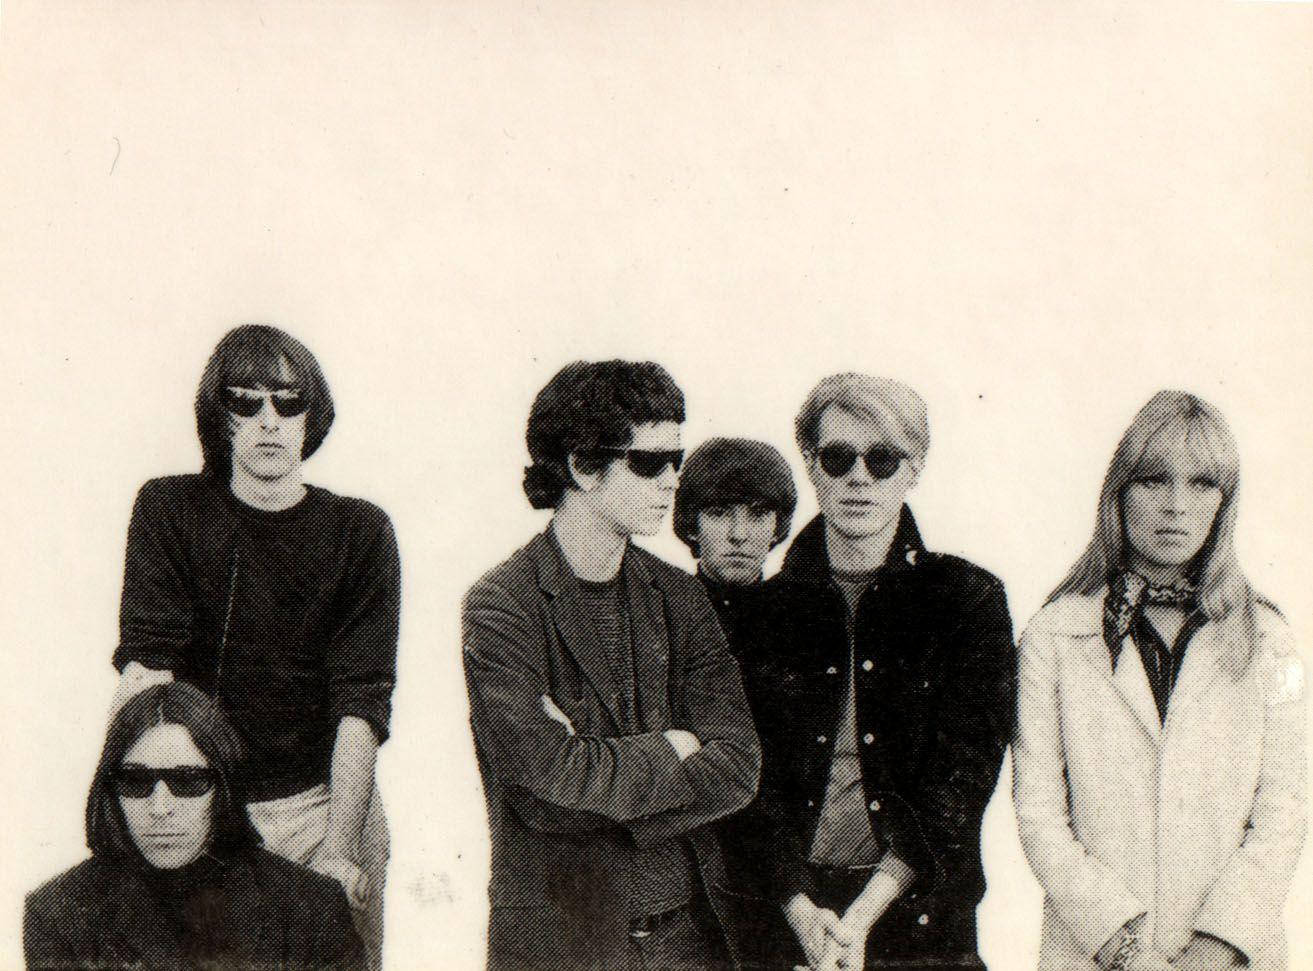 print – Lav et print med The Velvet Underground og Andy Warhol. Wallpaper